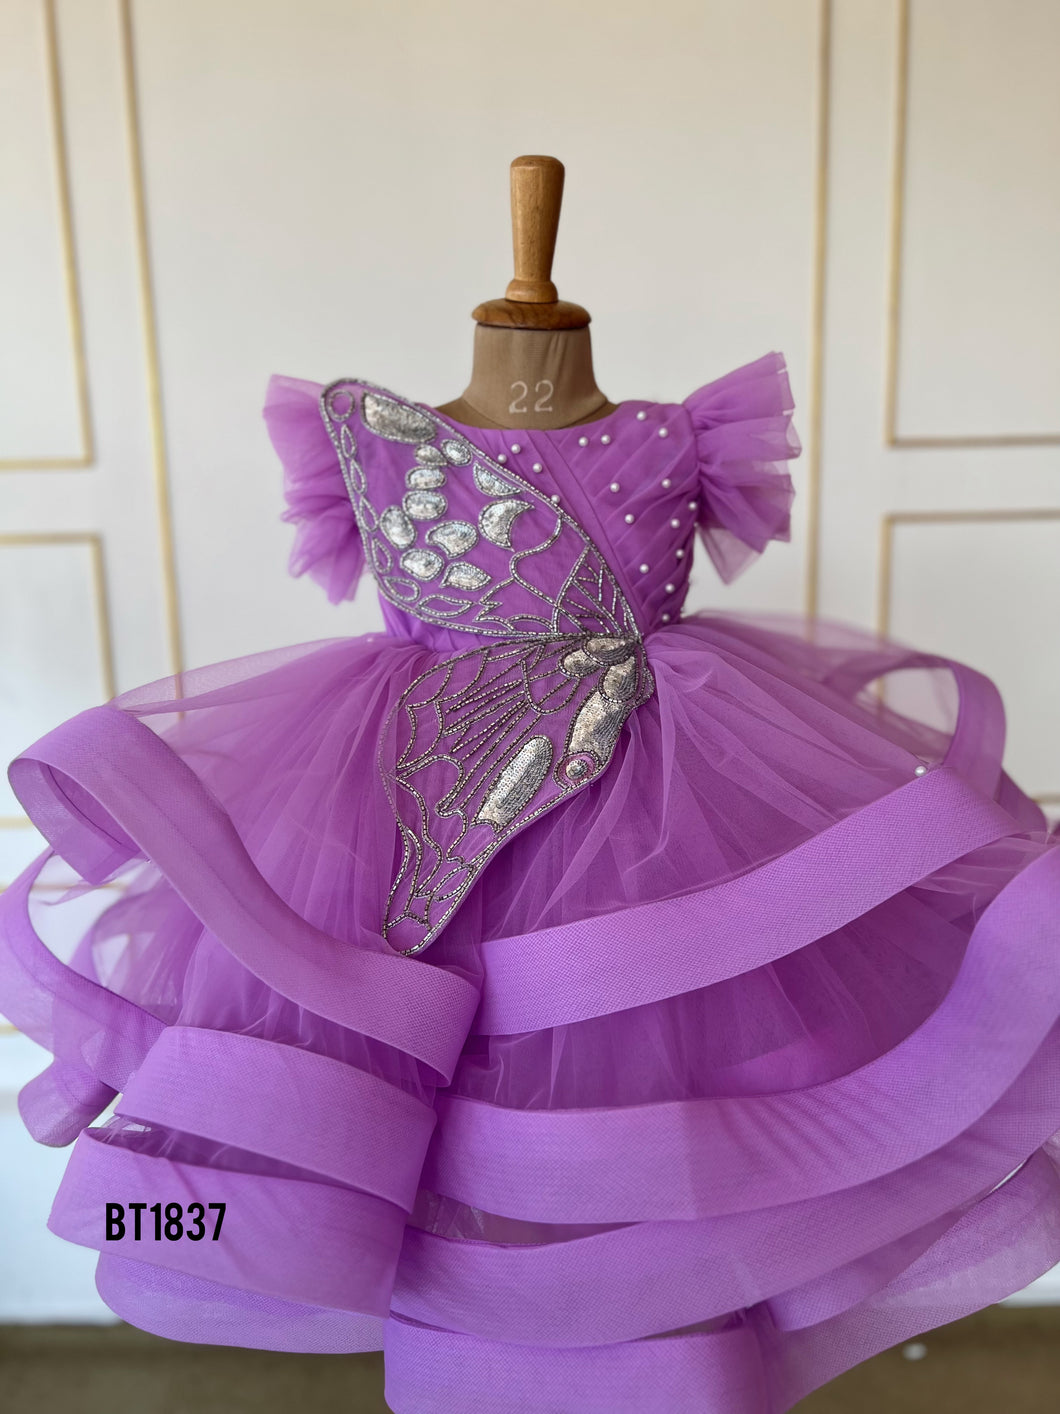 BT1837 Mystic Wings: Enchanted Purple Fairy Dress